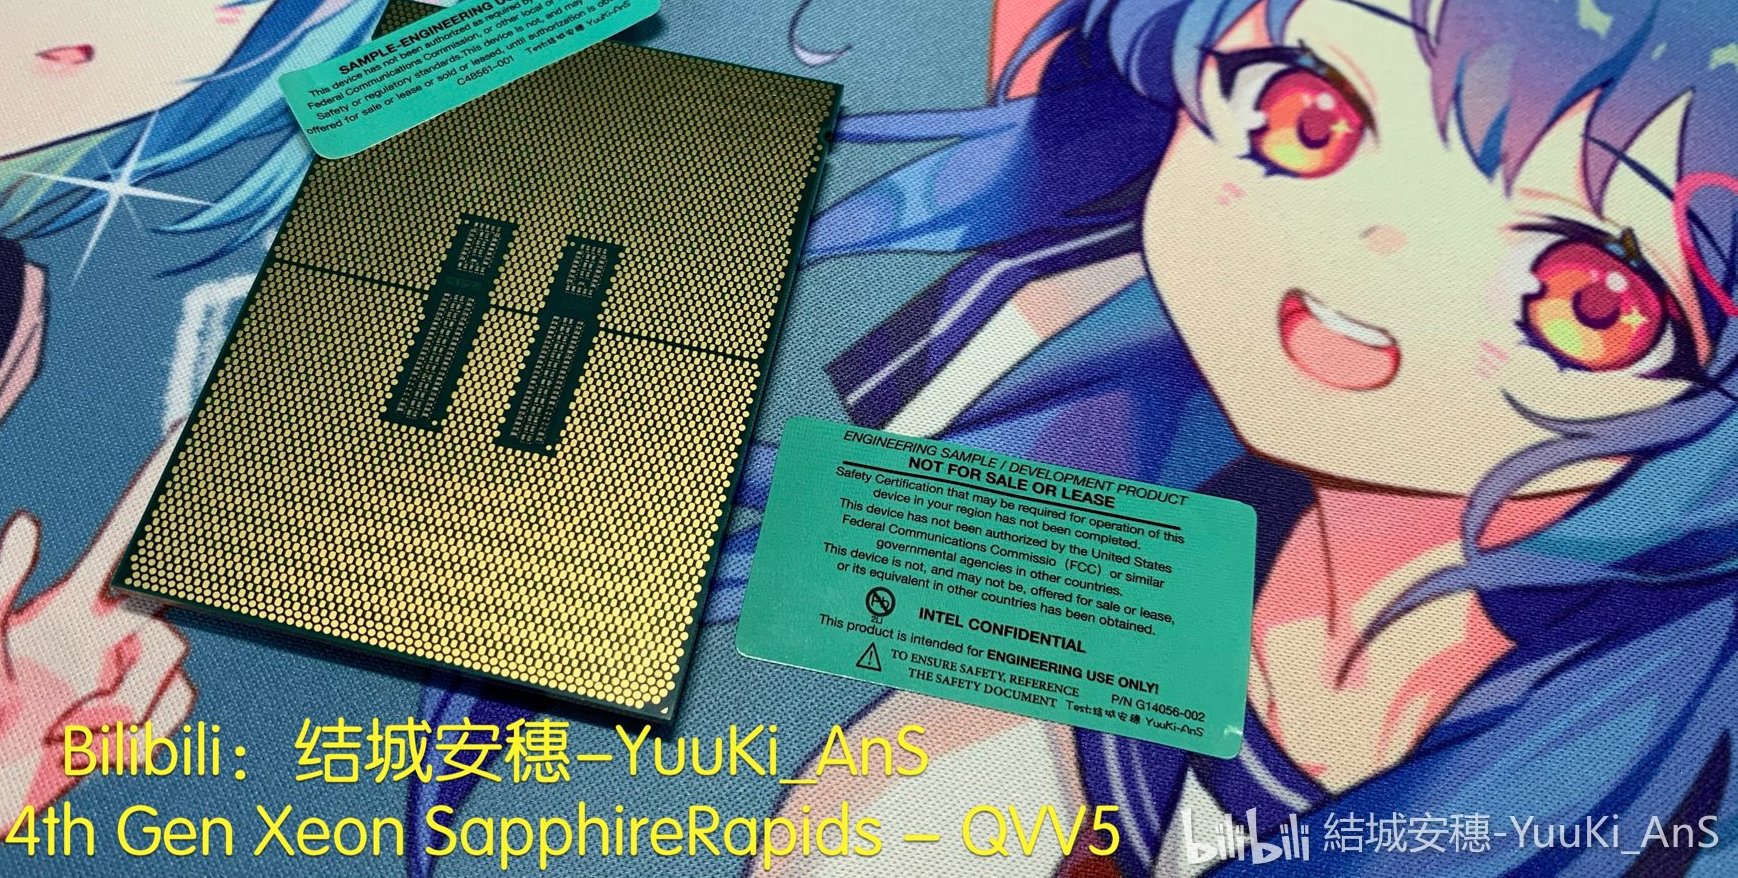 Immagine pubblicata in relazione al seguente contenuto: Foto della CPU Intel Xeon Sapphire Rapids SP compatibile con DDR5 e PCIe Gen 5 | Nome immagine: news31653_Intel-Xeon-Sapphire-Rapids-SP_2.jpg